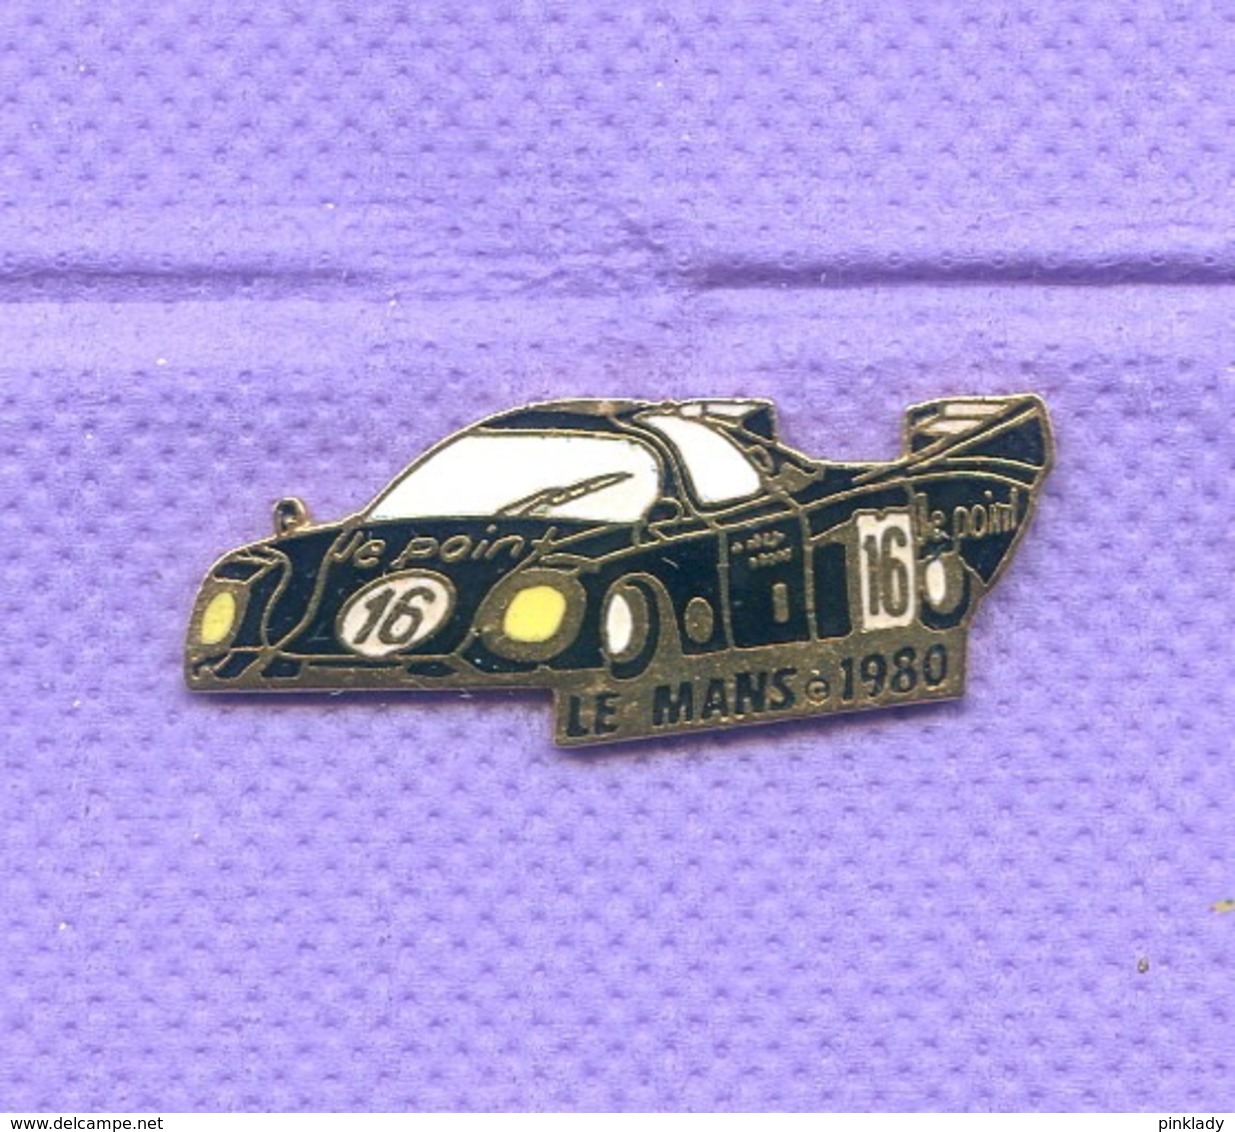 Rare Pins 24 Heures Du Mans 1980 Auto Rondeau Egf K235 - Automobile - F1